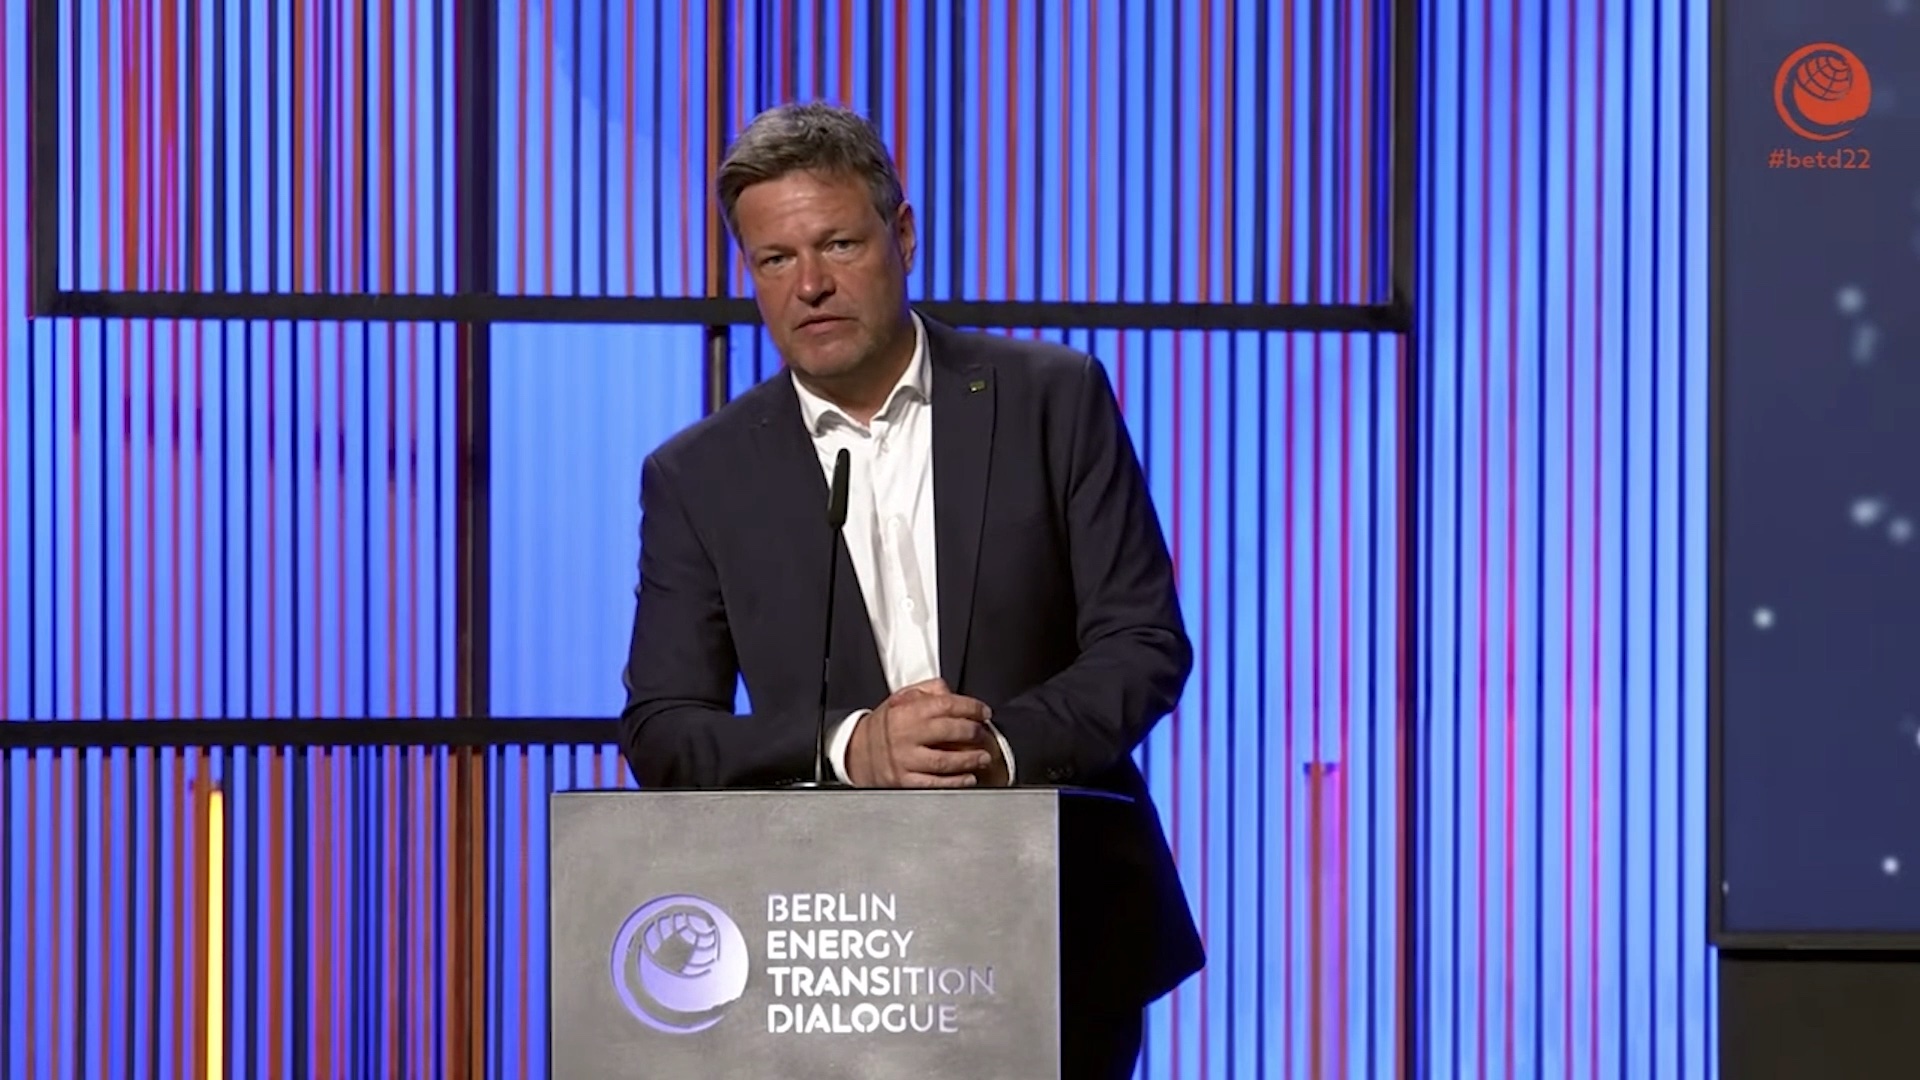 Robert Habeck, de Duitse minister van economische zaken en klimaatactie, tijdens de Berlin Energy Transition Dialoge